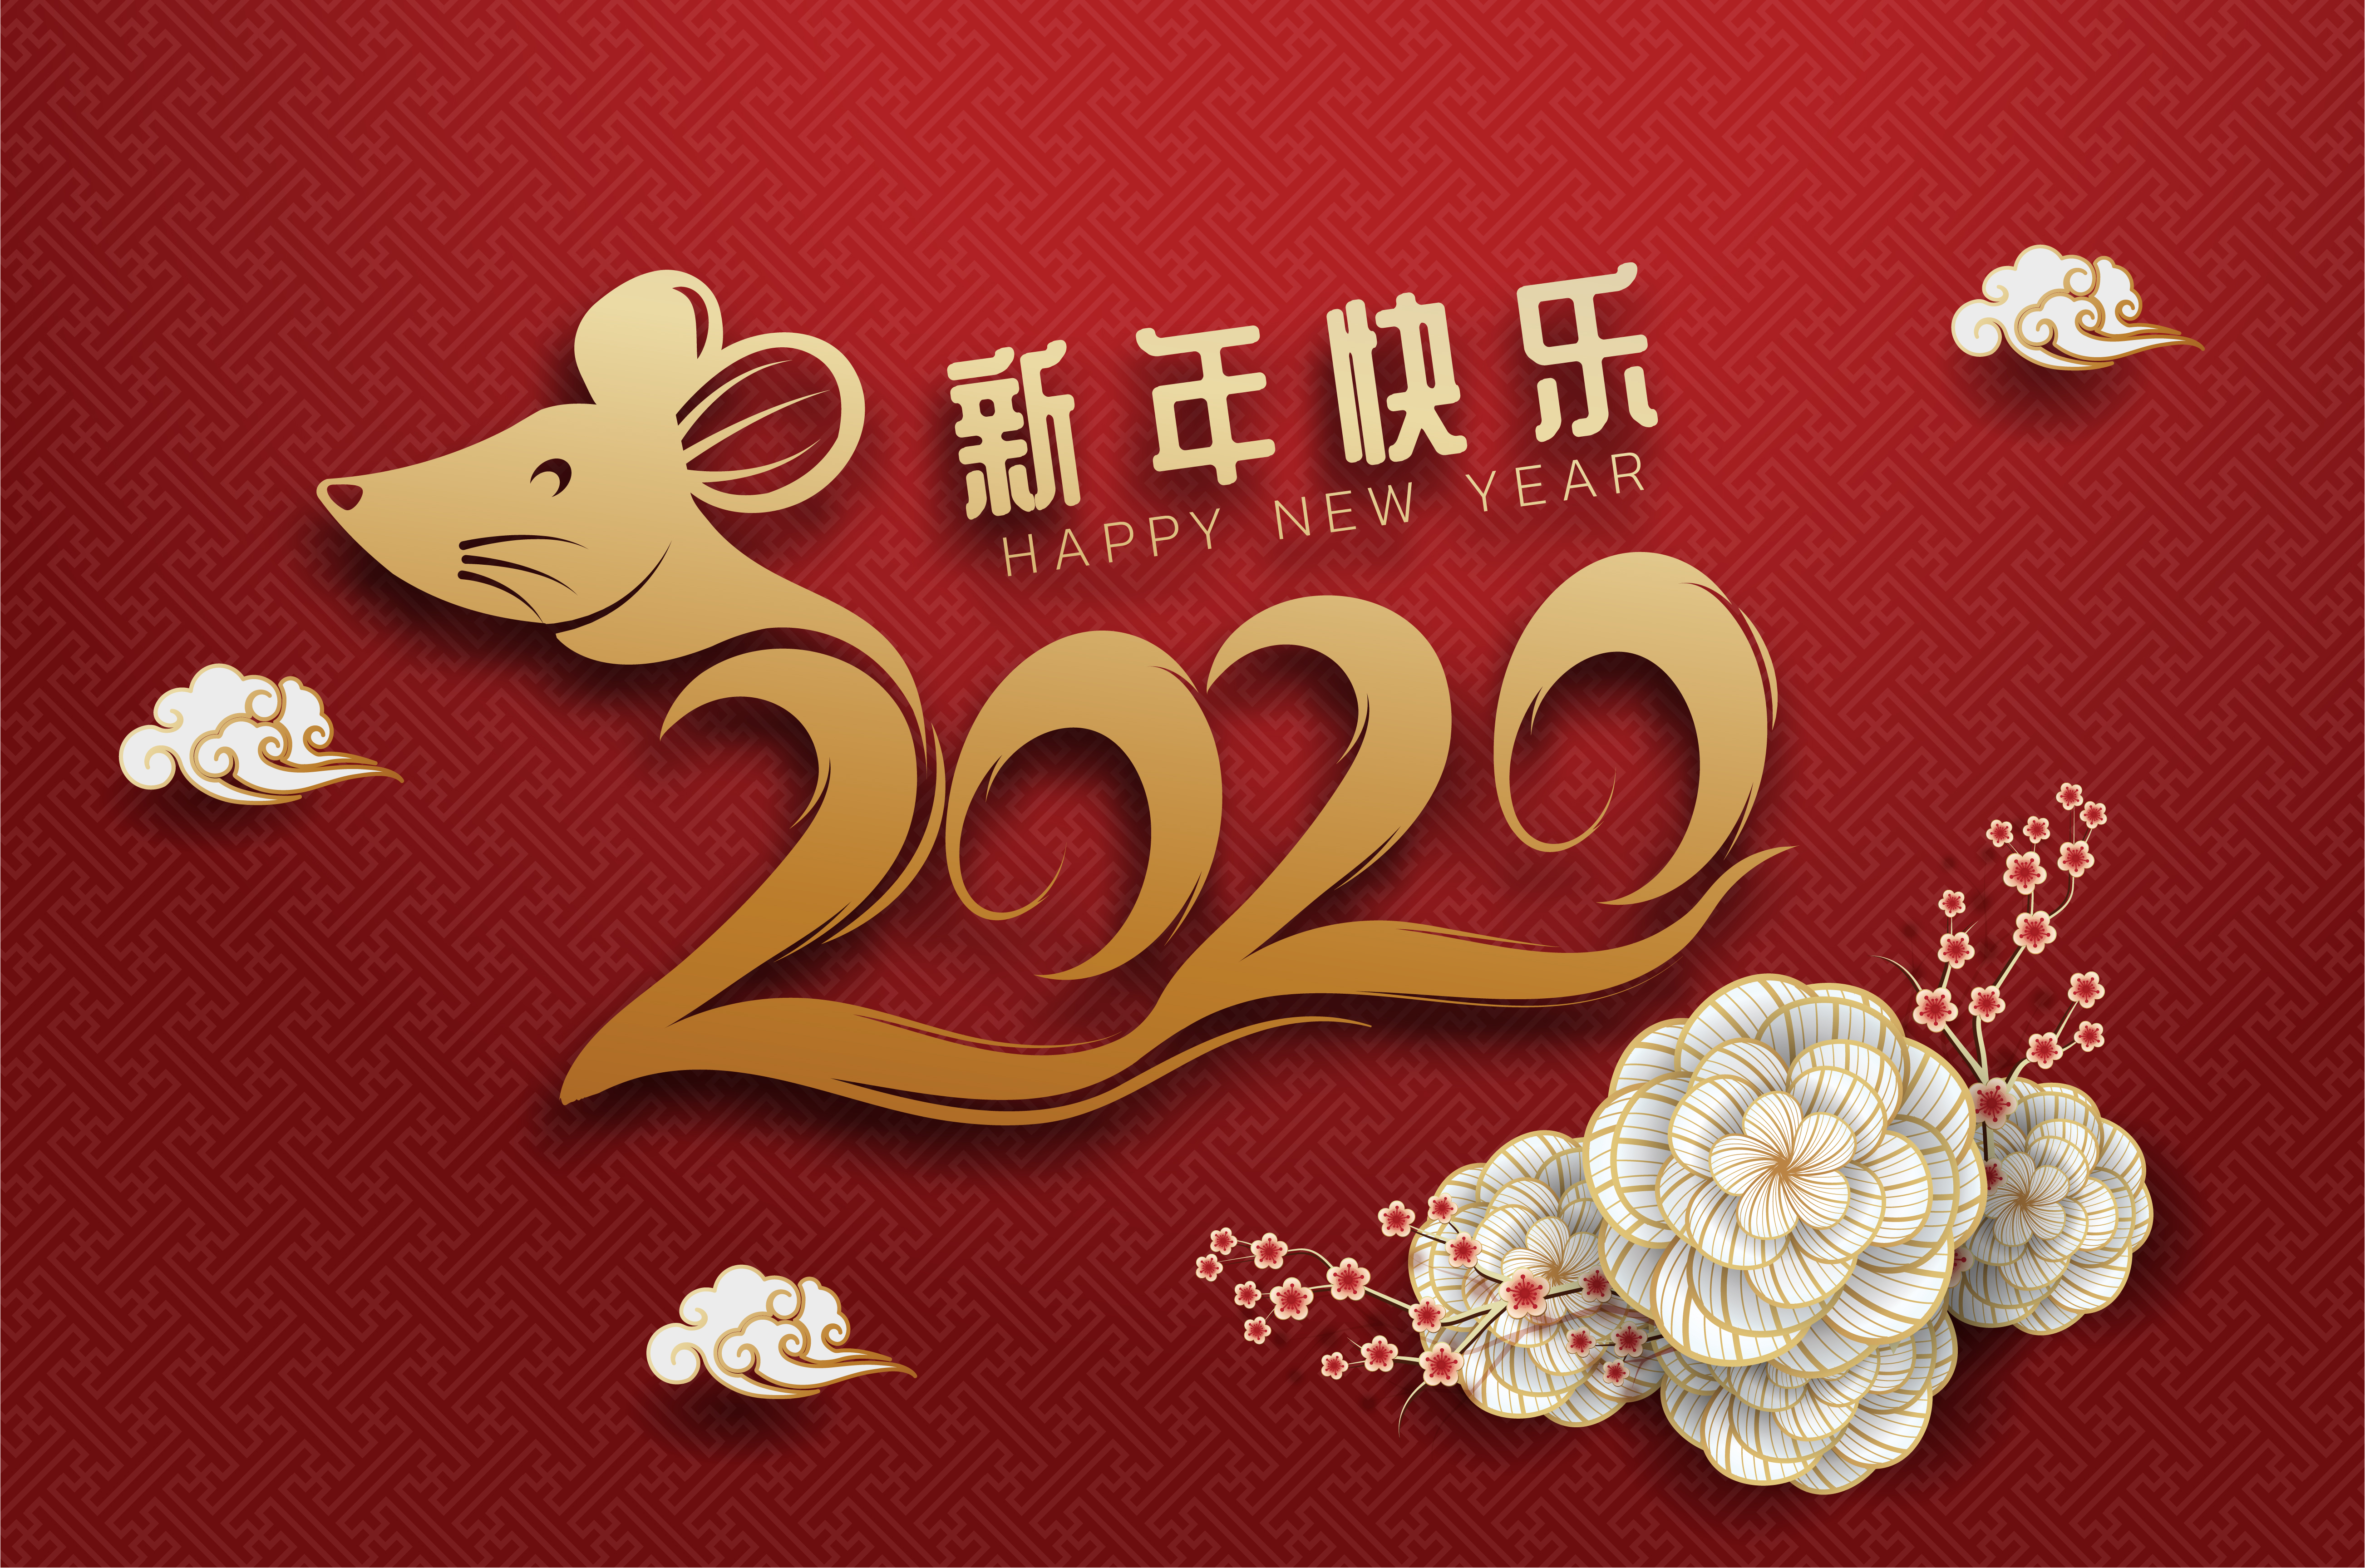 2019 год красивый. Китайский новый год открытки. Корейский новый год. Символы китайского нового года. Китайские новогодние открытки.